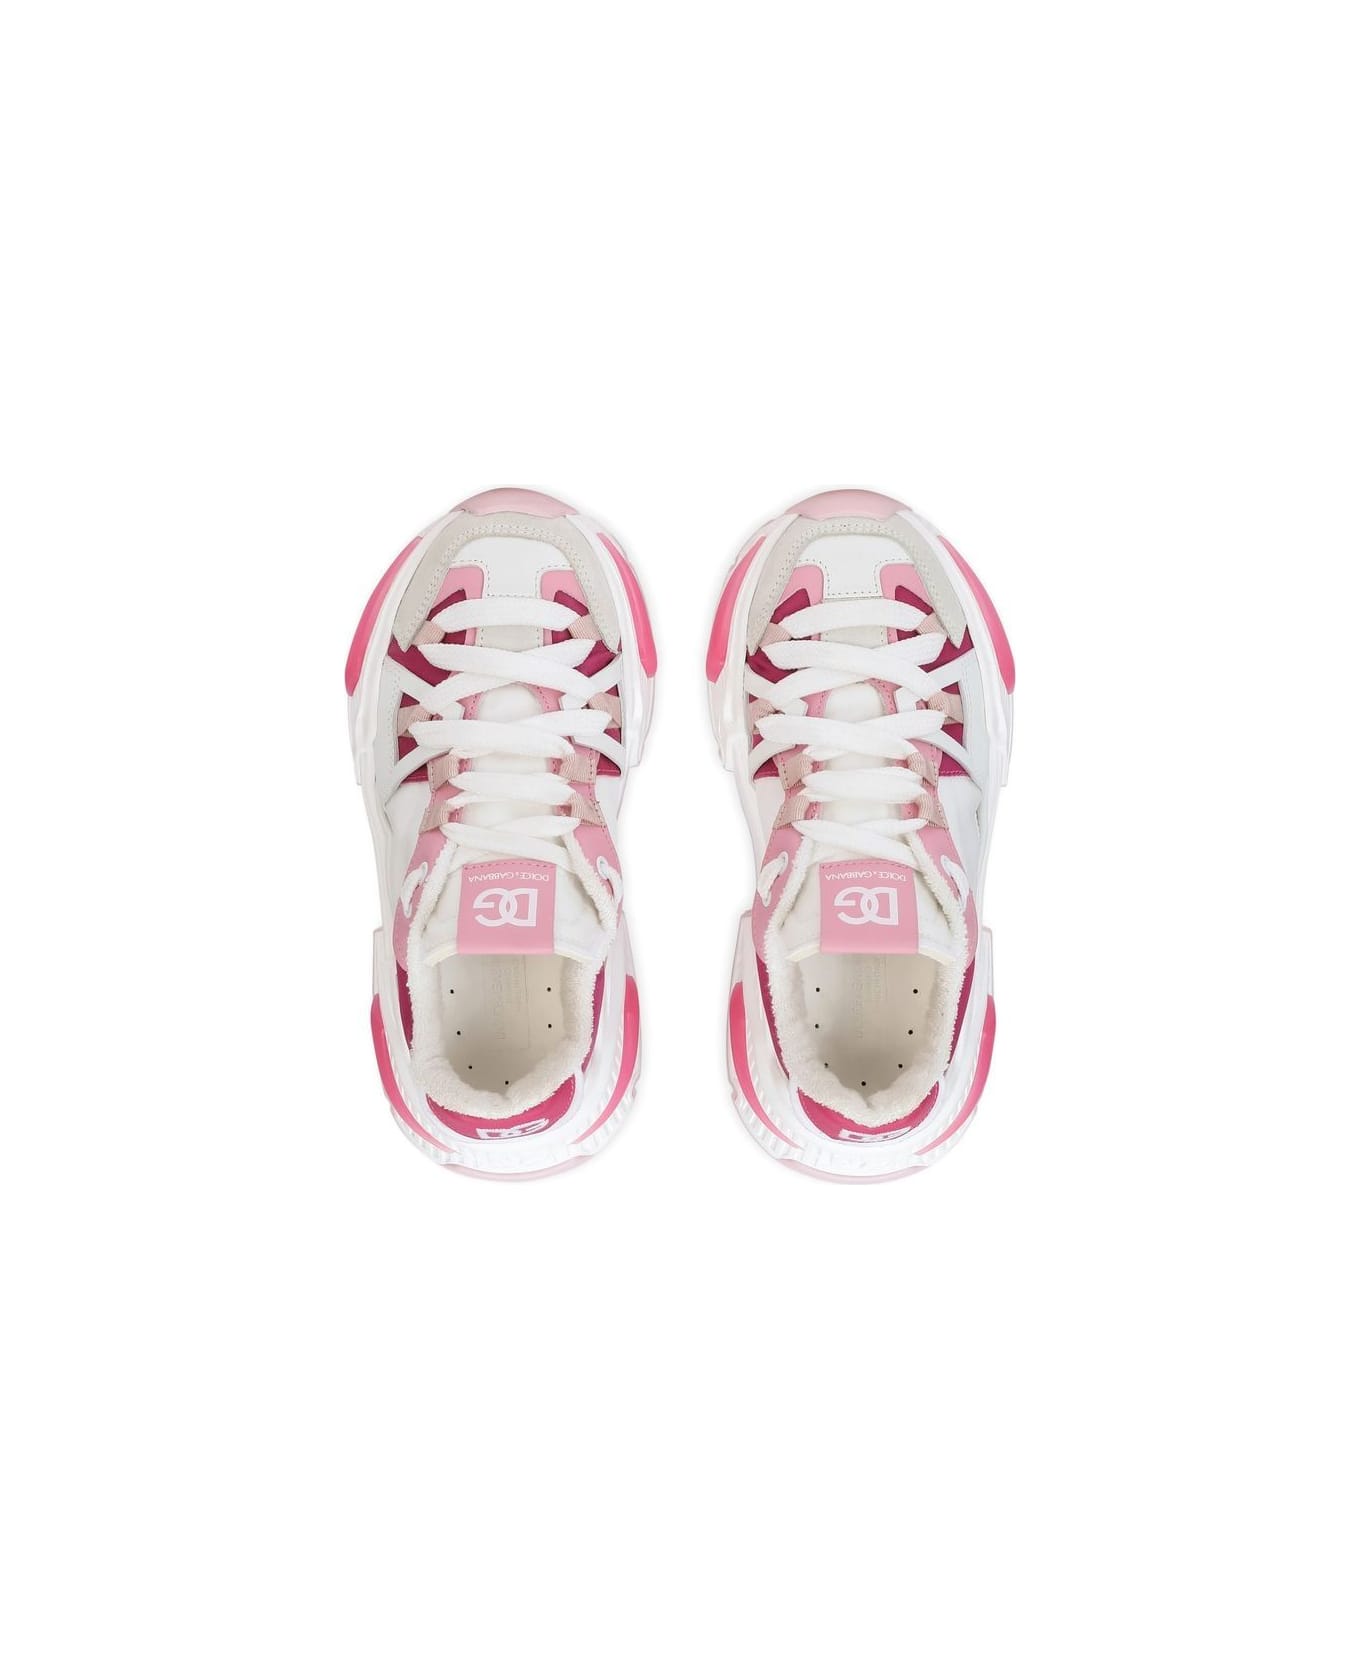 Dolce & Gabbana Sneakers Bianche E Rosa In Vitello Con Inserti In Tnt Bambina - Bianco